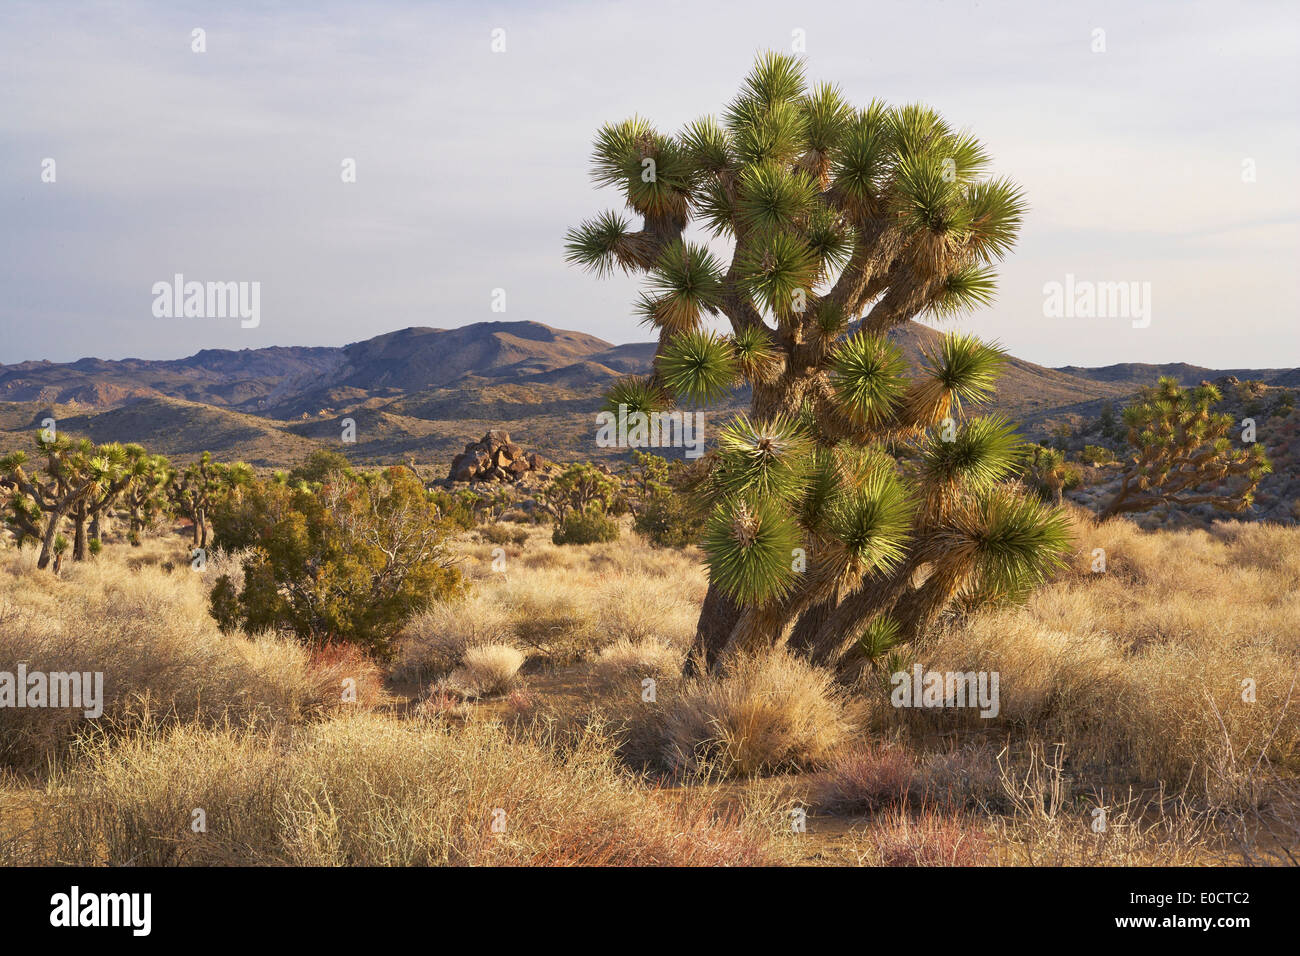 Joshua trees à Joshua Tree National Park, désert de Mojave, Californie, USA, Amérique Latine Banque D'Images